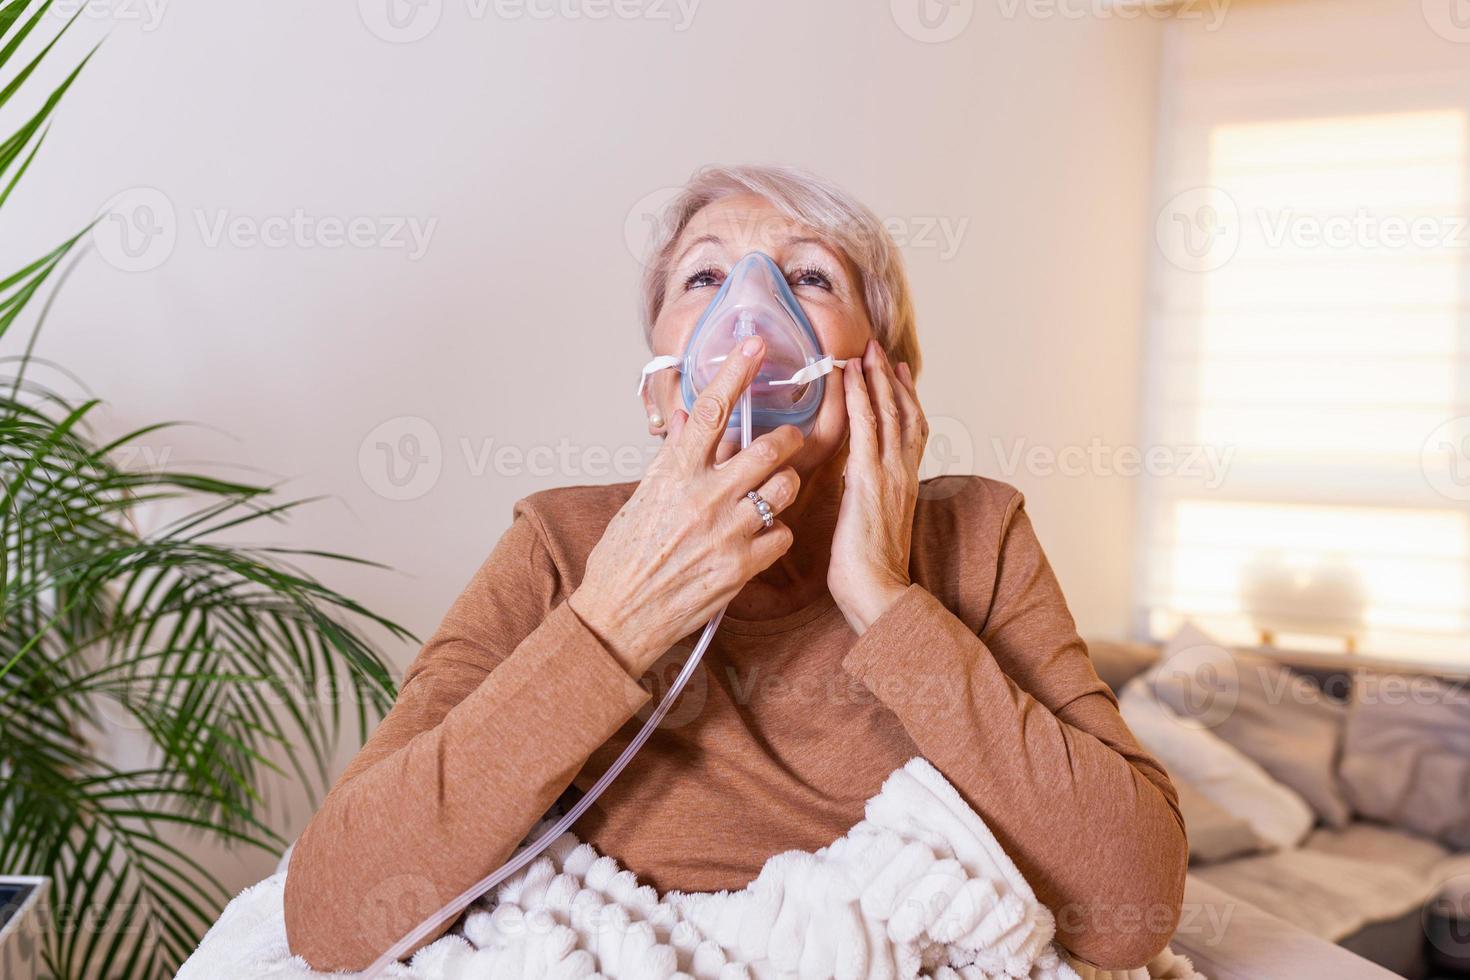 femme âgée malade faisant l'inhalation, la médecine est la meilleure médecine. femme âgée malade portant un masque à oxygène et subissant un traitement. femme âgée avec un inhalateur photo